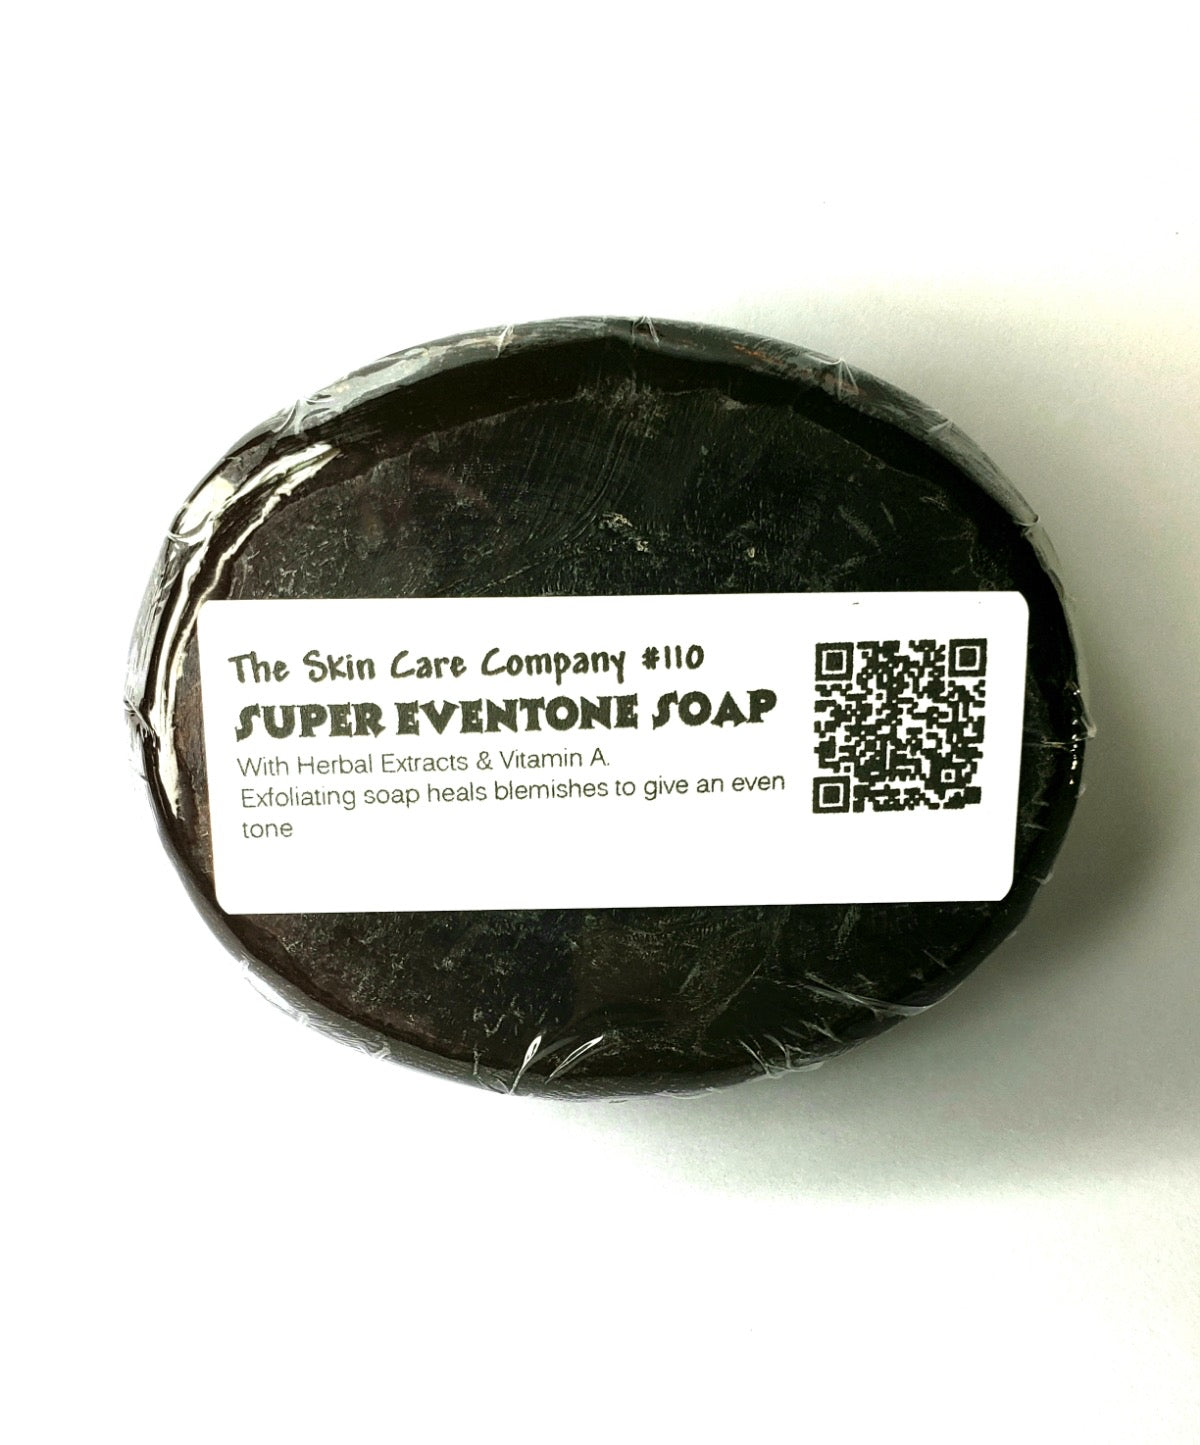 Super Eventone Soap